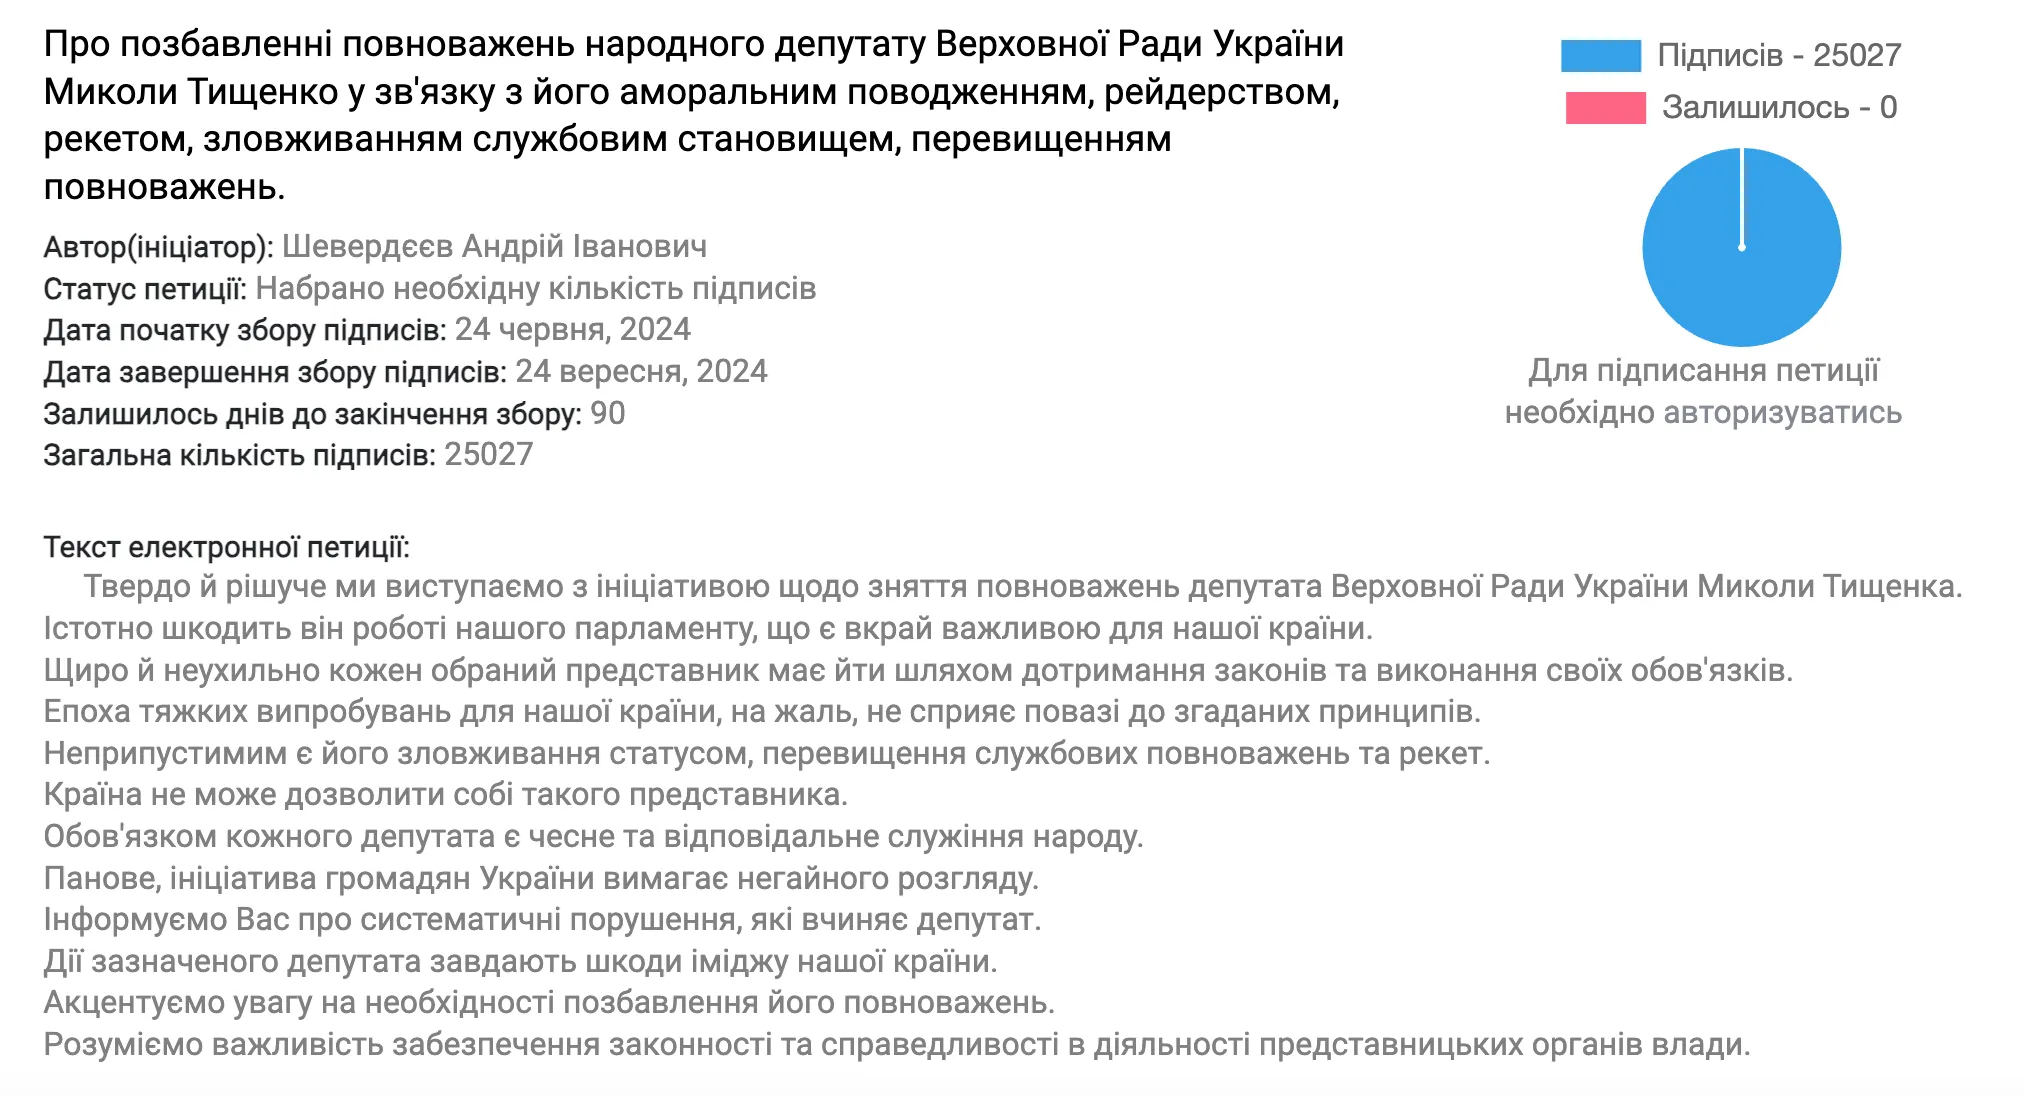 Петиція щодо позбавлення Тищенка депутатських повноважень набрала 25 тисяч підписів